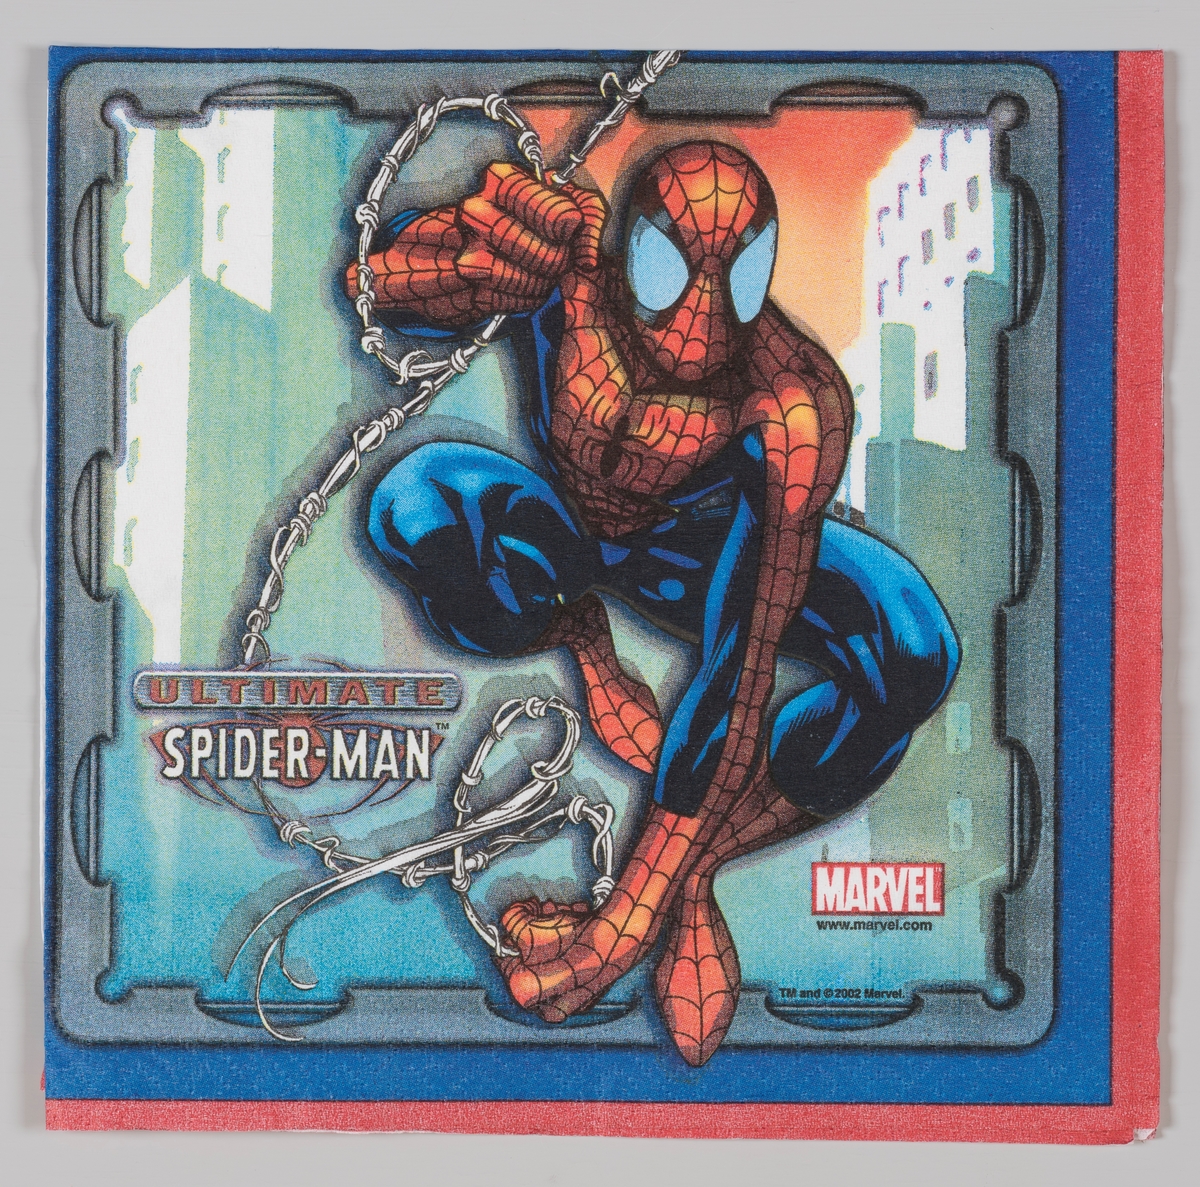 Spiderman

Spider-man er en amerikansk tegneseriefigur som er skapt i 1962 og tilhører selskapet Marvels superhelte univers. I Norge utkom en tegneserie med figuren med navnet Edderkoppen i 1968. I 1999 var serien tilbake i Norge under navnet Spider-Man. Tre amerikanske kinofilmer med Spider-Man er produsert i 2002, 2004 og 2007.